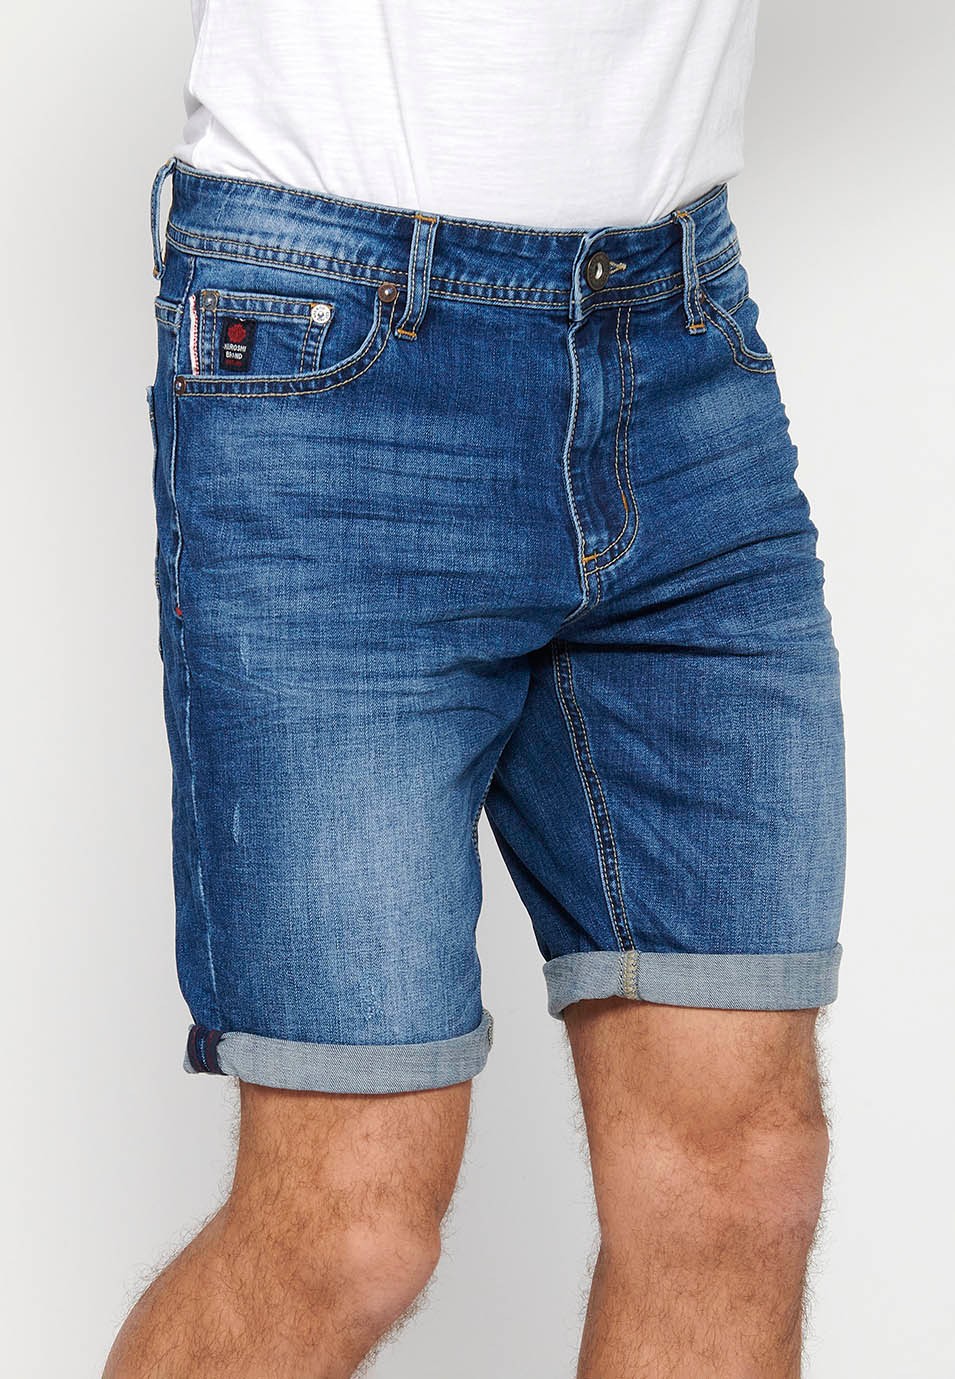 Bermuda-Jeansshorts mit Reißverschluss und Knopfverschluss vorne und fünf Taschen, eine blaue Tasche für Herren